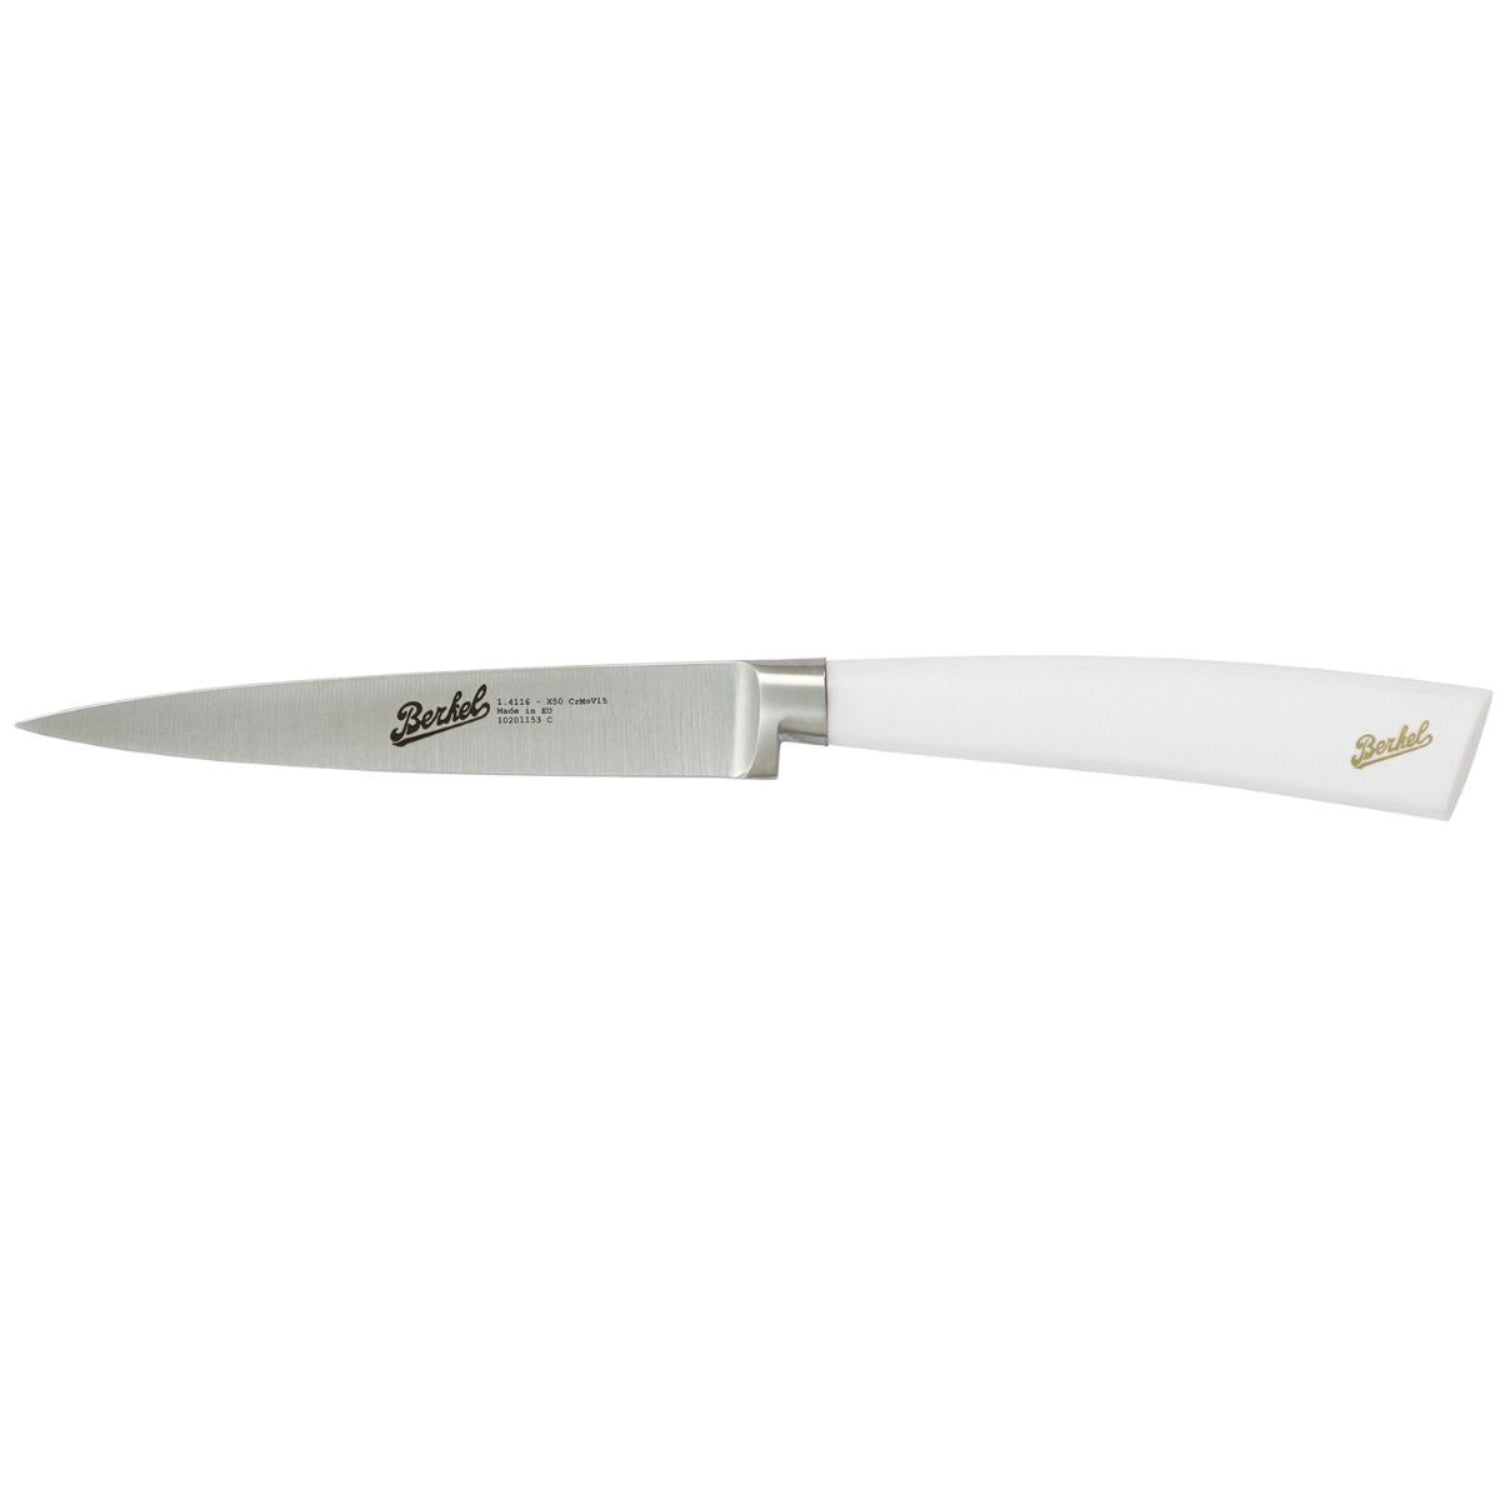 Berkel Elegance Paring knife cm 11 Steel handle